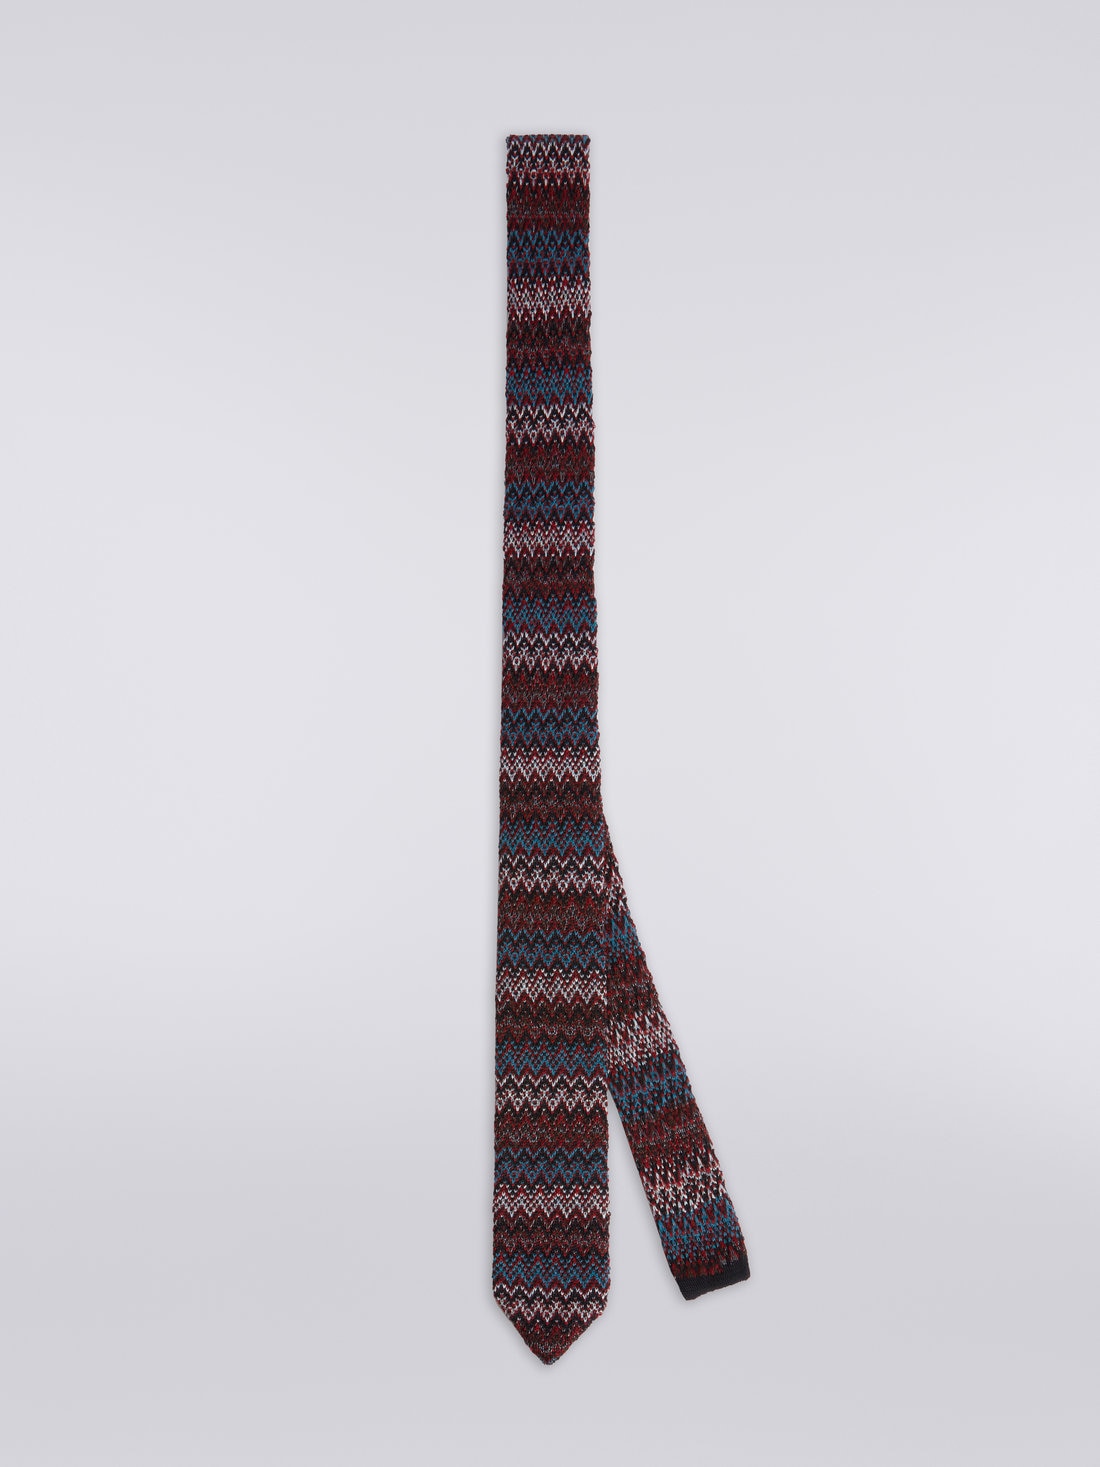 Cravatta in lana e seta chevron, Multicolore  - 8053147023441 - 0